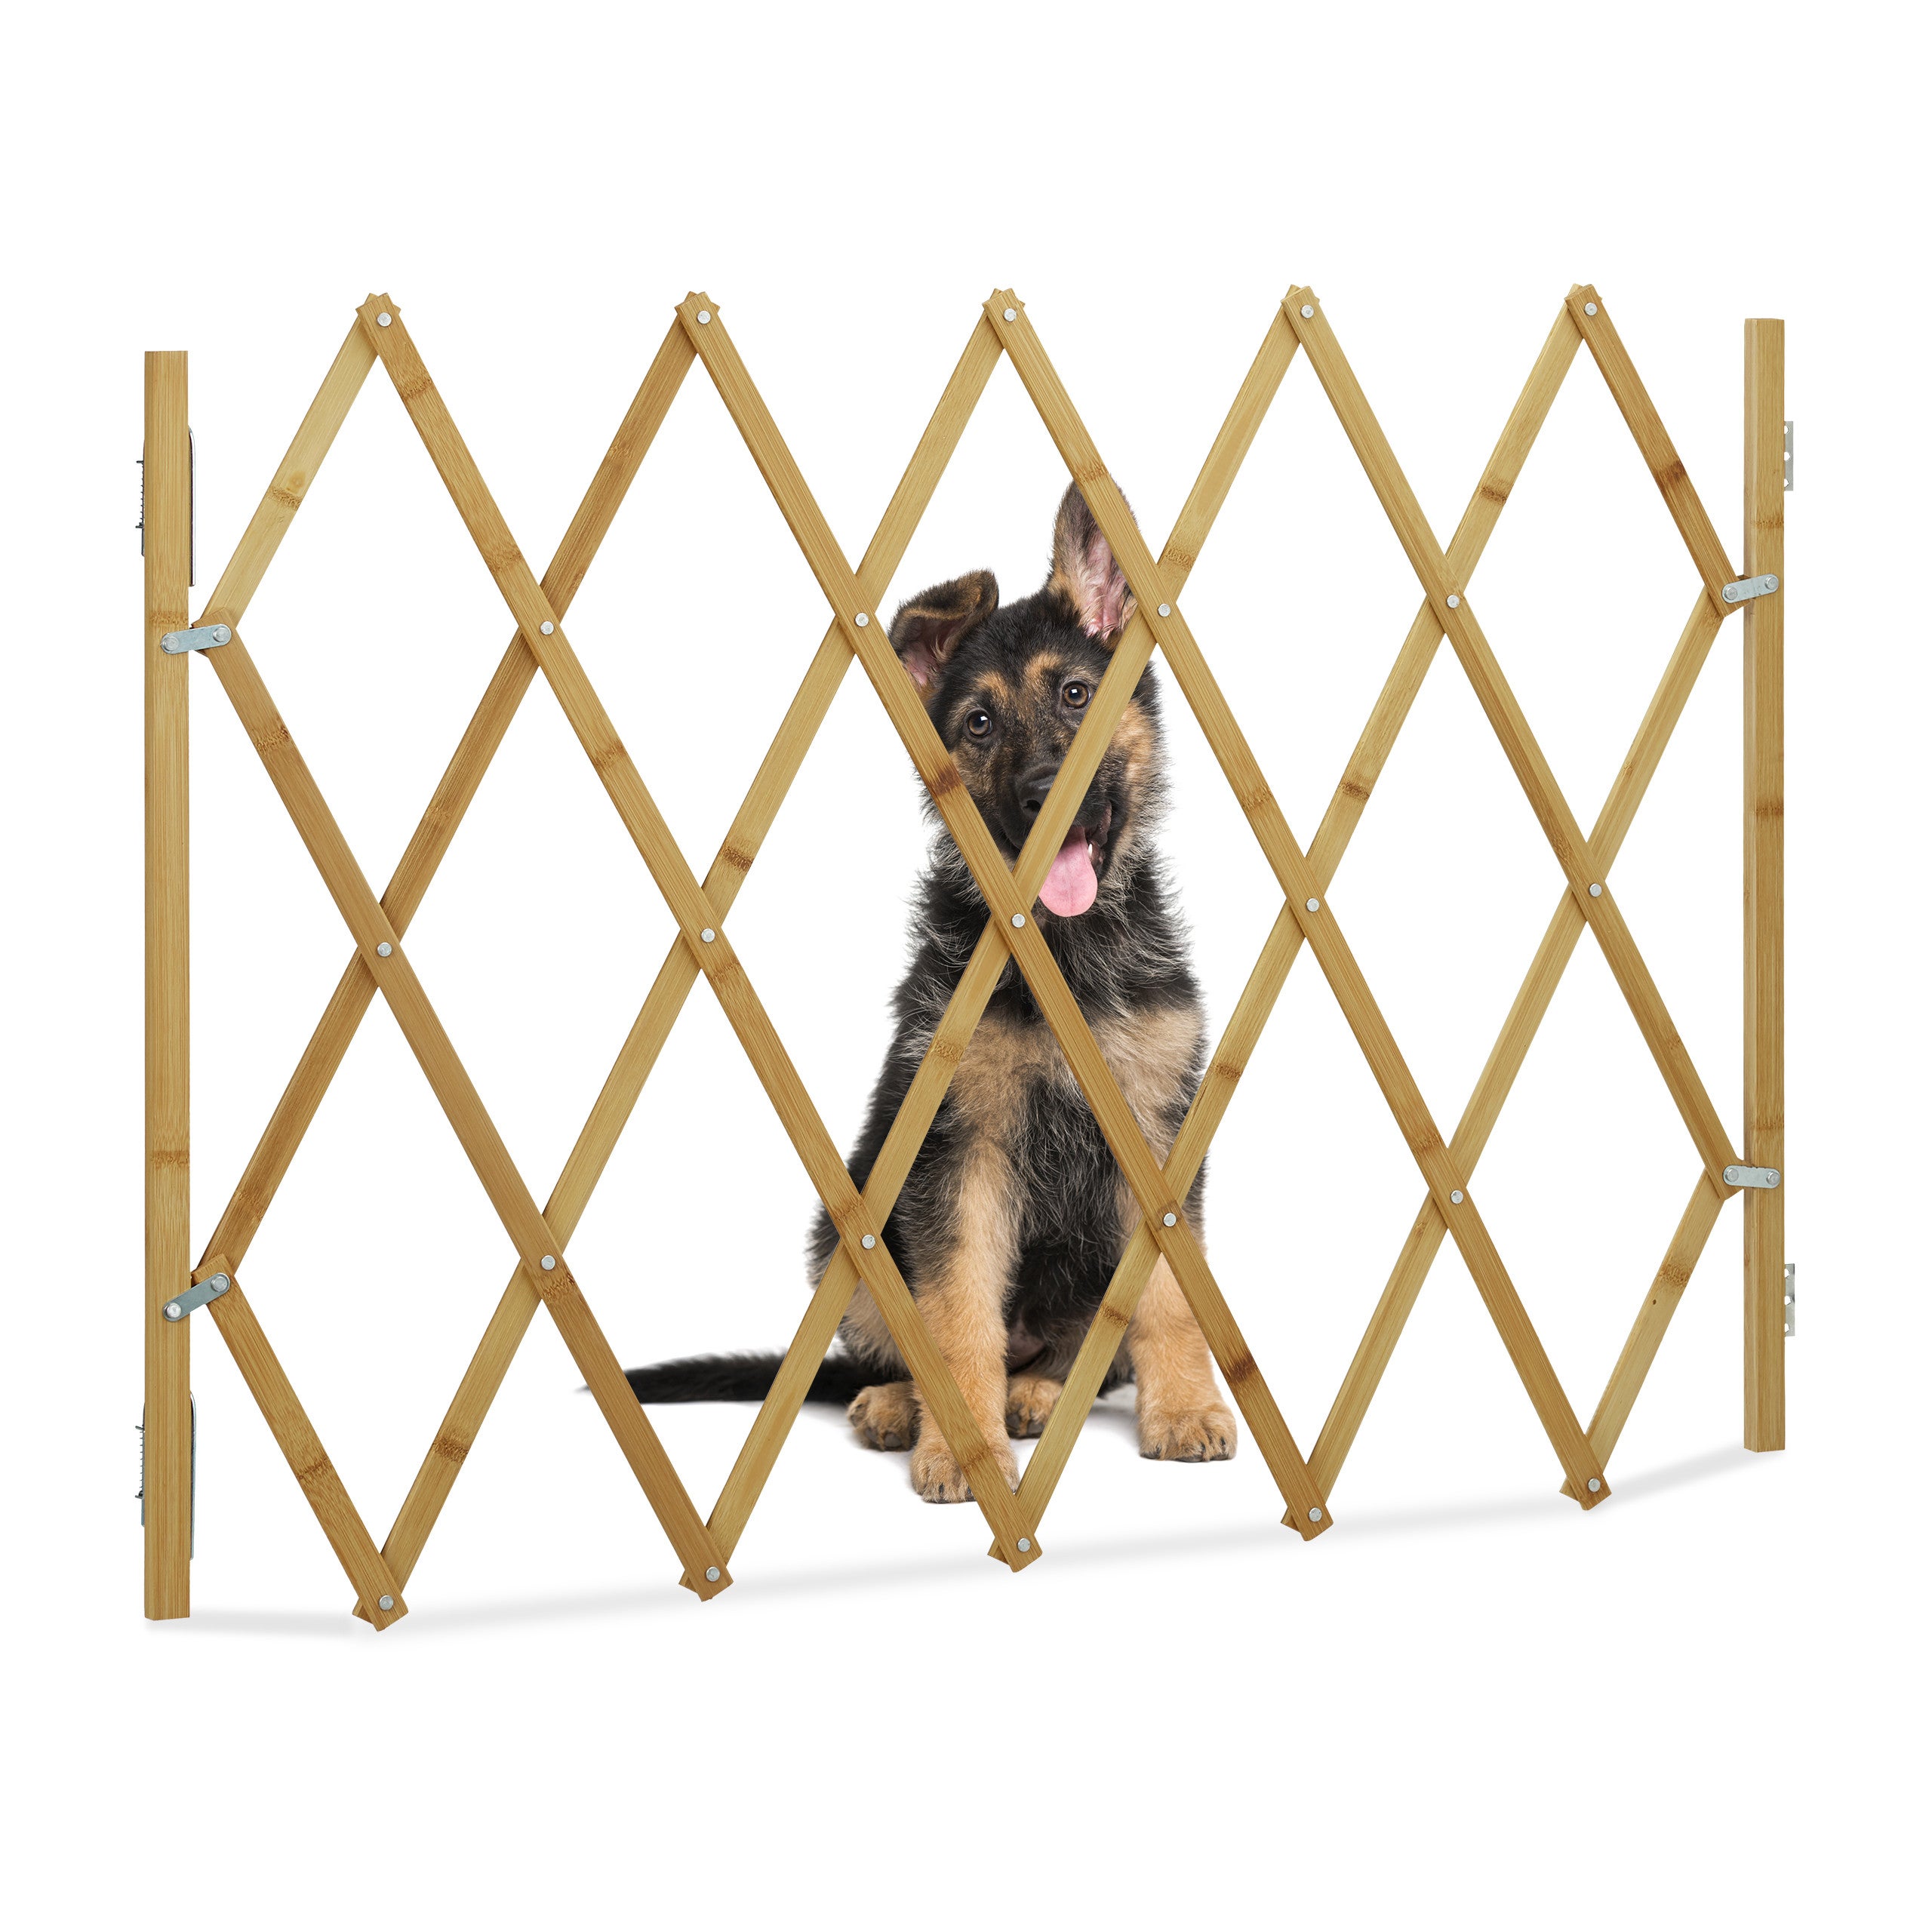 Barrière pour chien : sécurité et confort au jardin